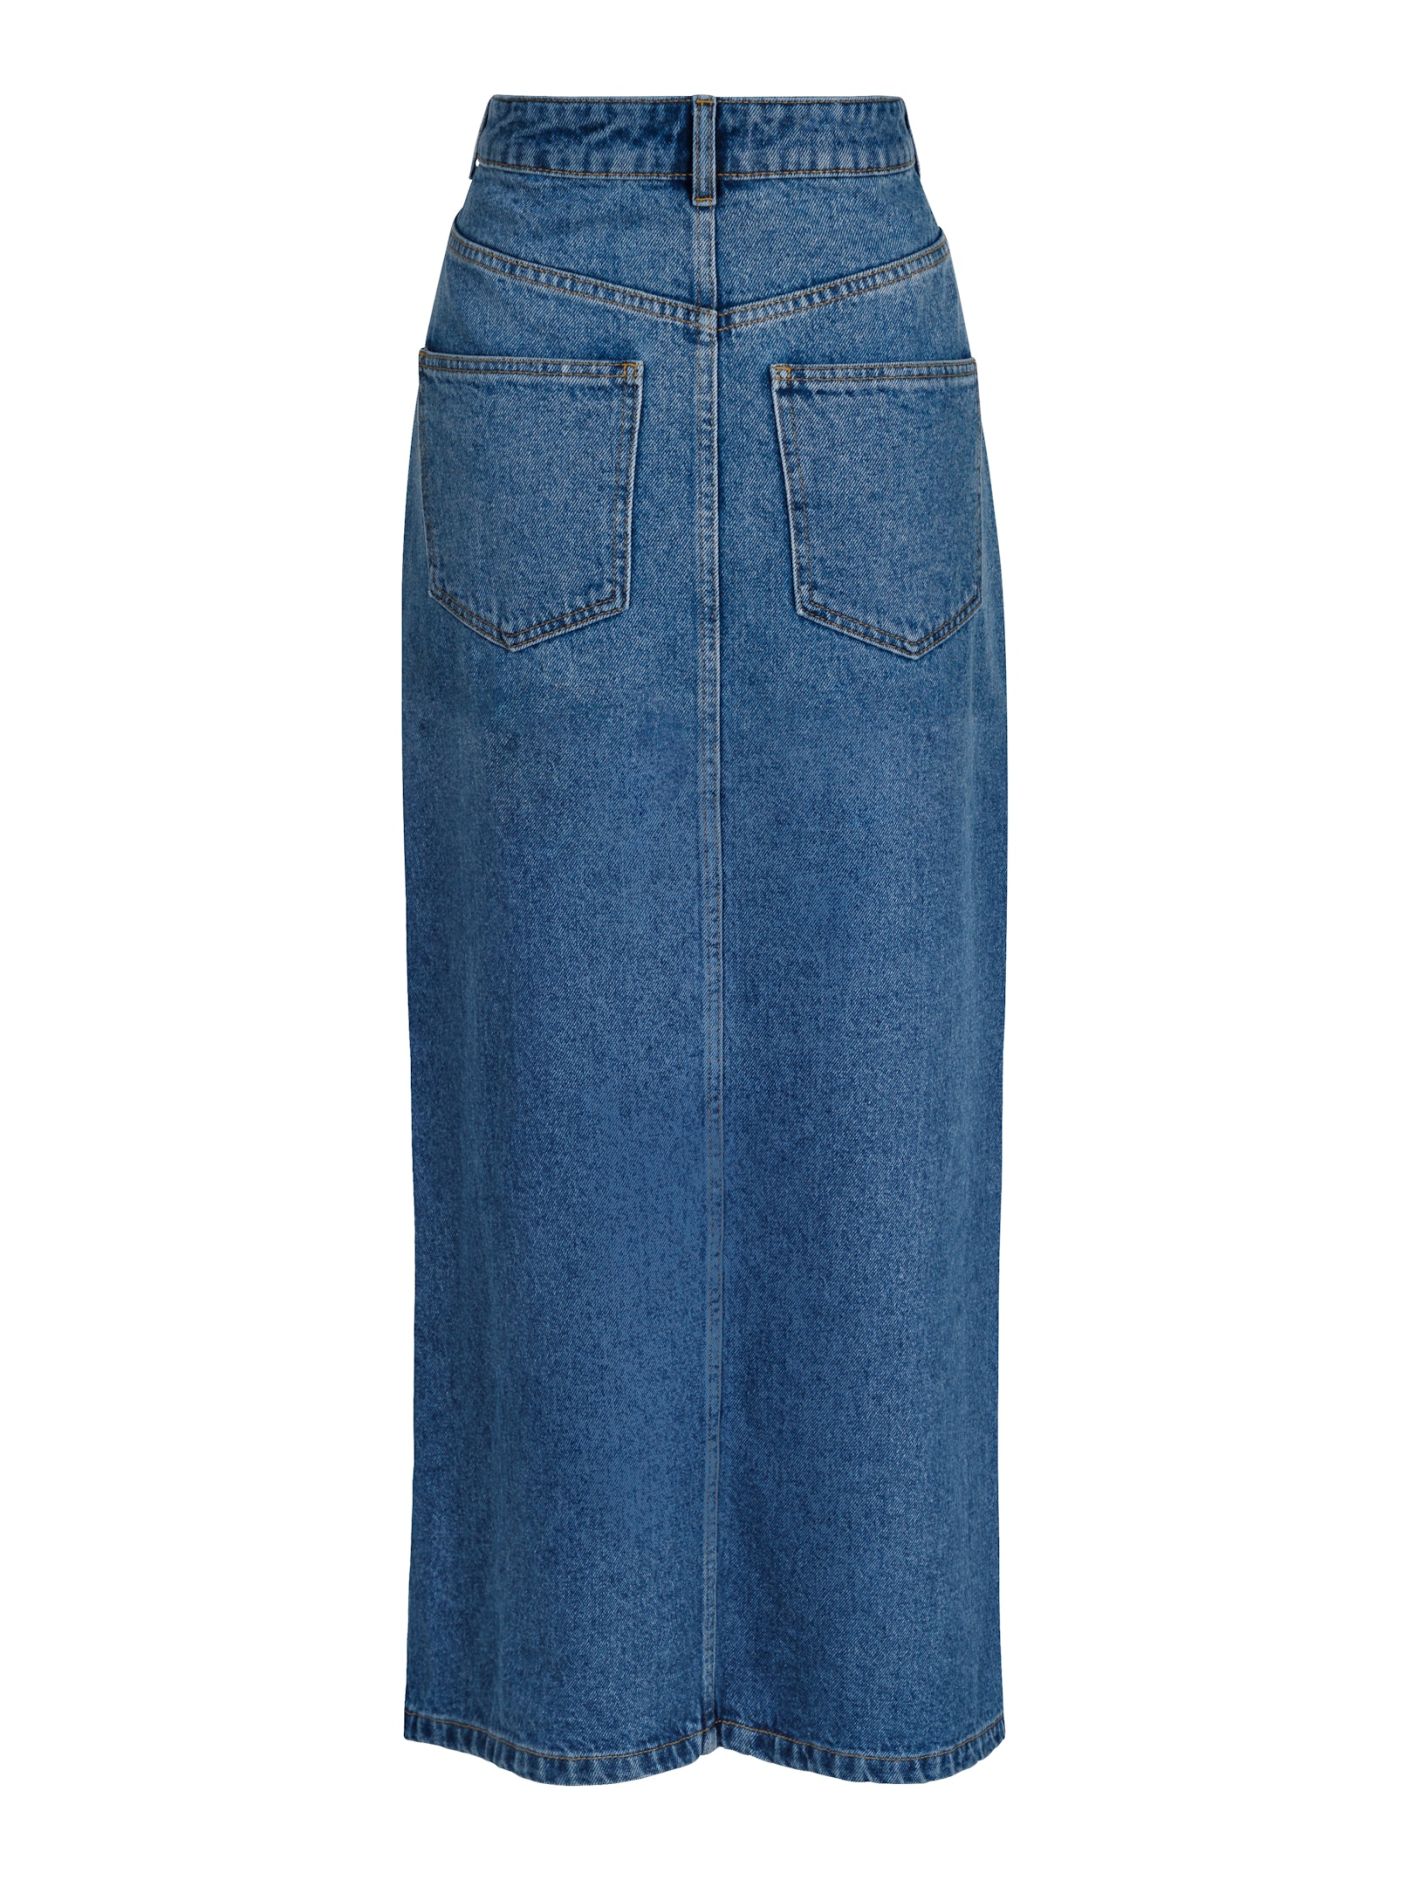 Frankie D Skirt Vintage Blue